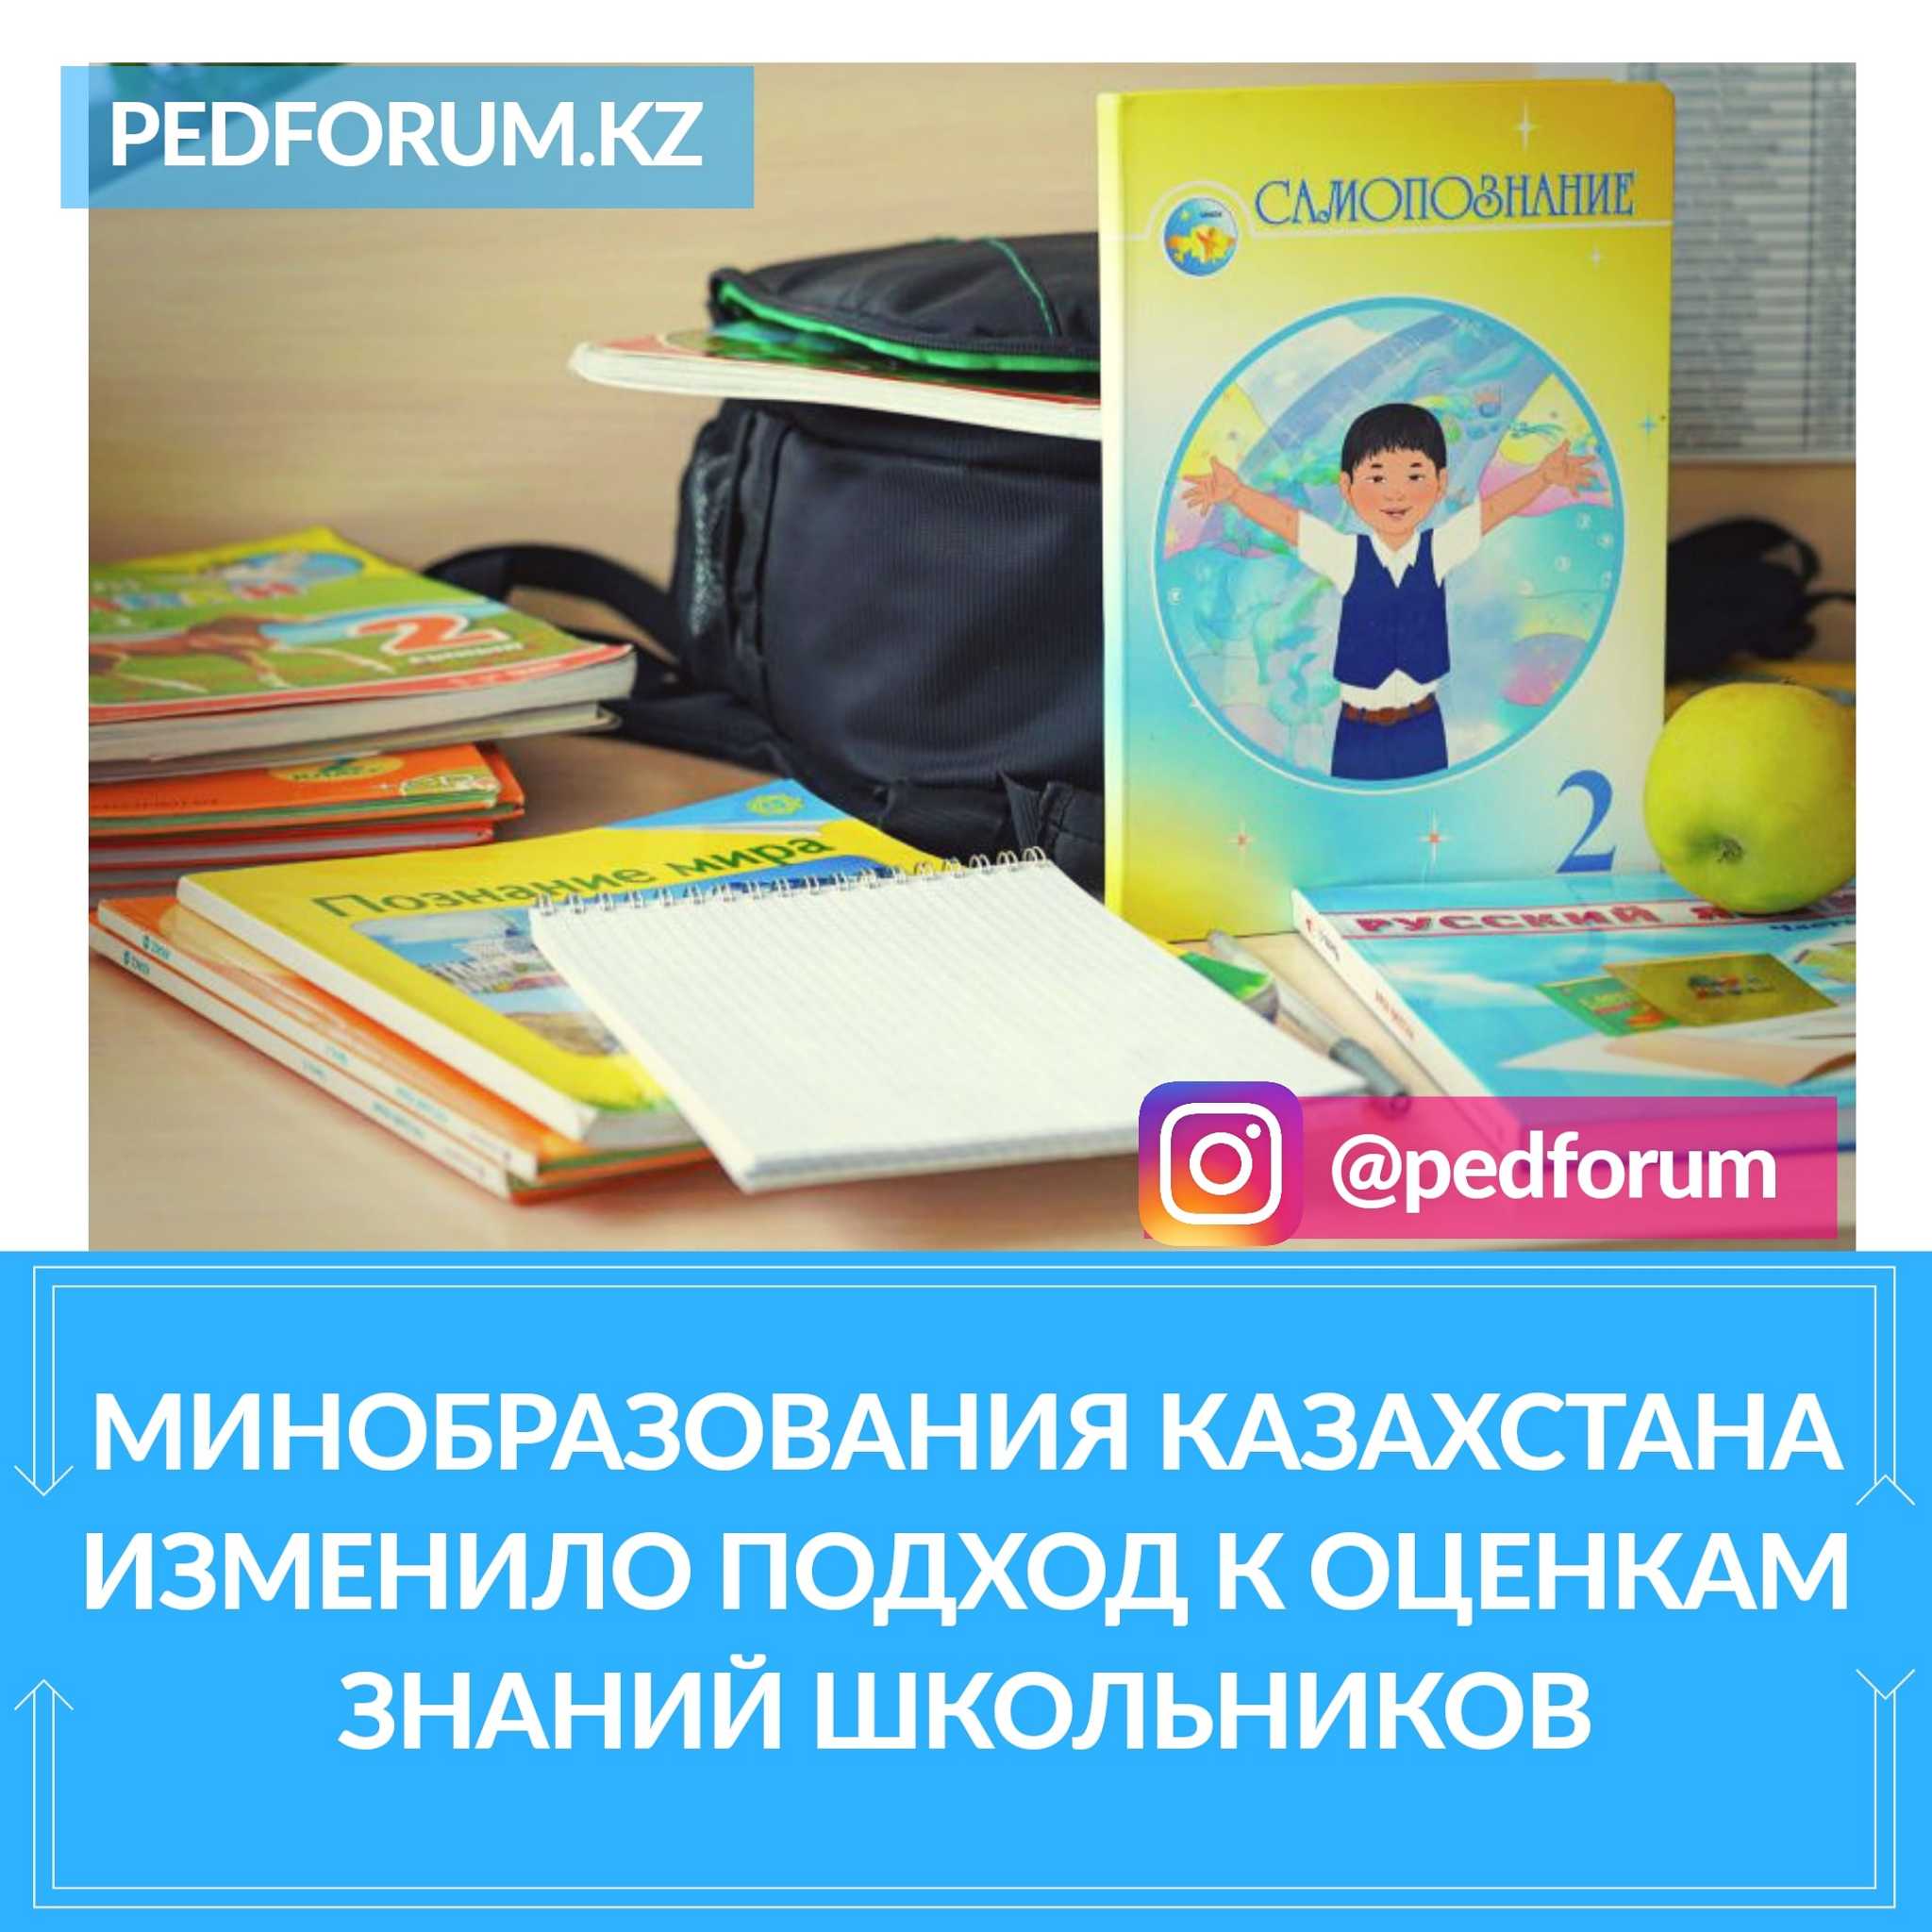 Минобразования Казахстана изменило подход к оценкам знаний школьников